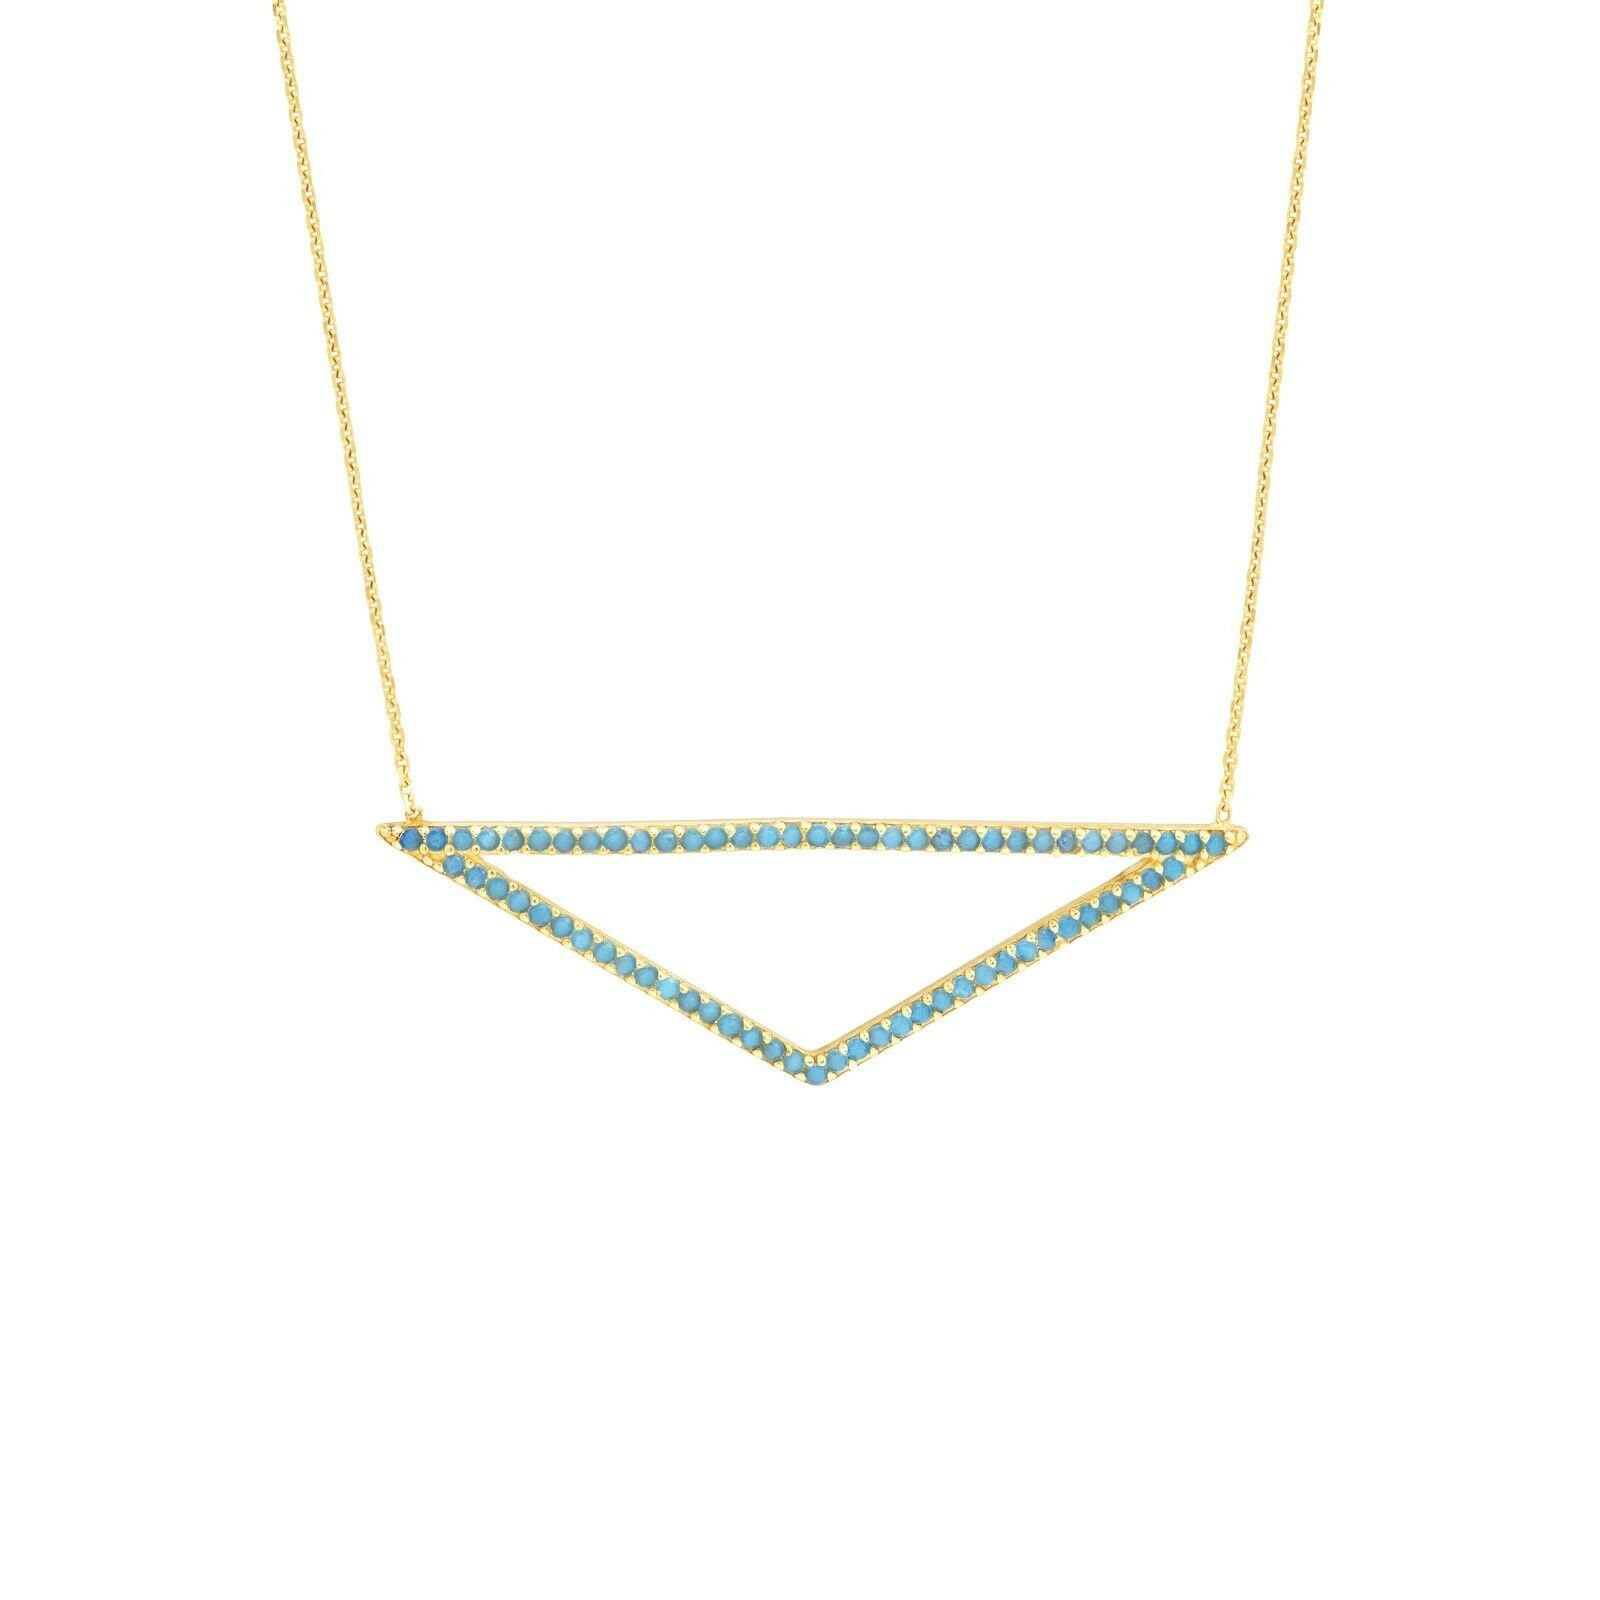 Verstellbares Offenes Dreieck Mit Nano Türkis Halskette Echt 14K Gelbgold 18" von BayamJewelry